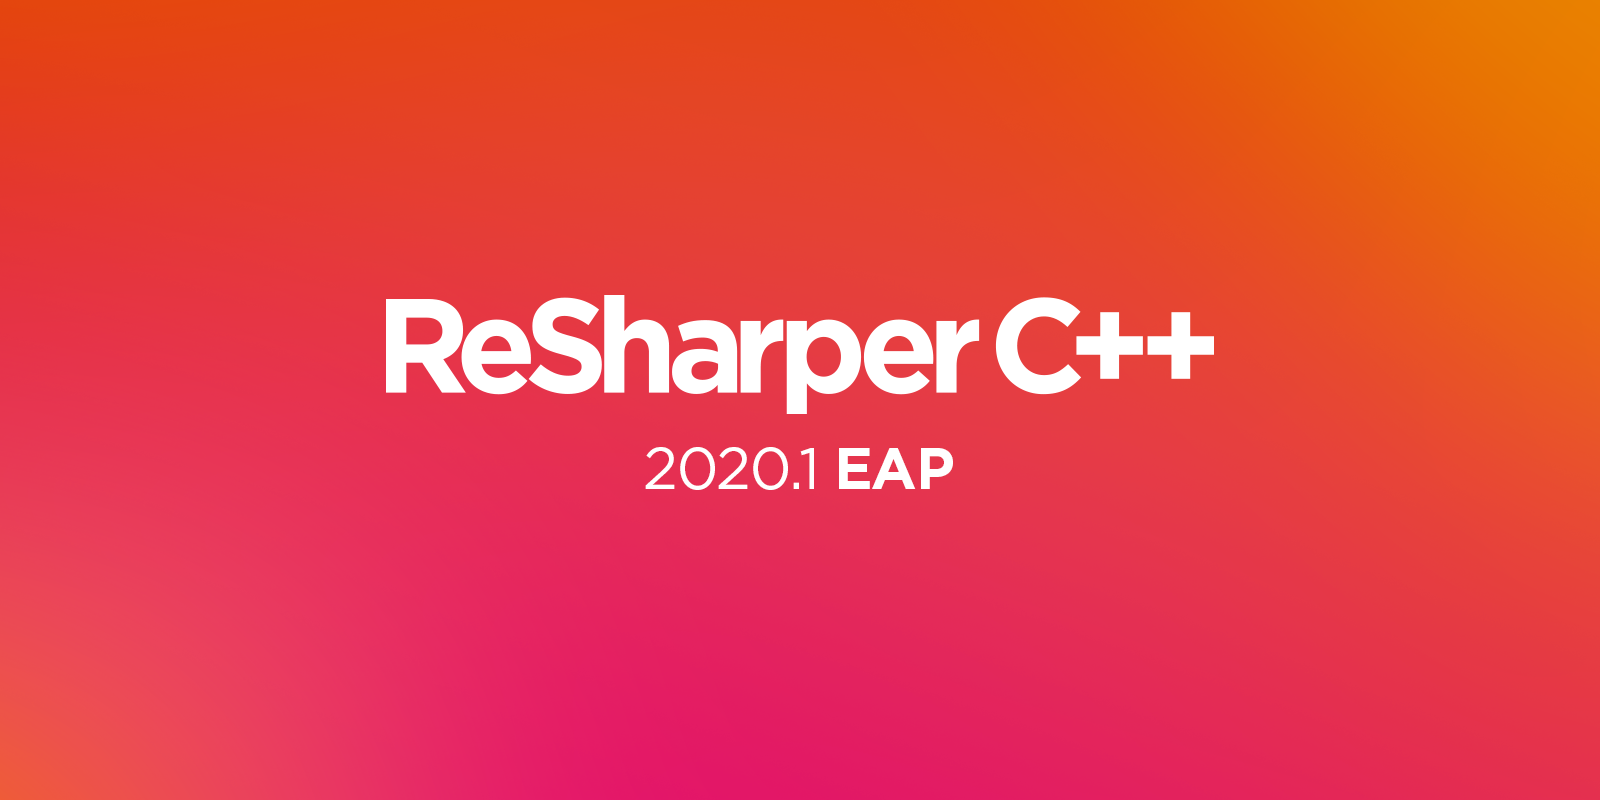 ReSharper C++ 2020.1 EAP